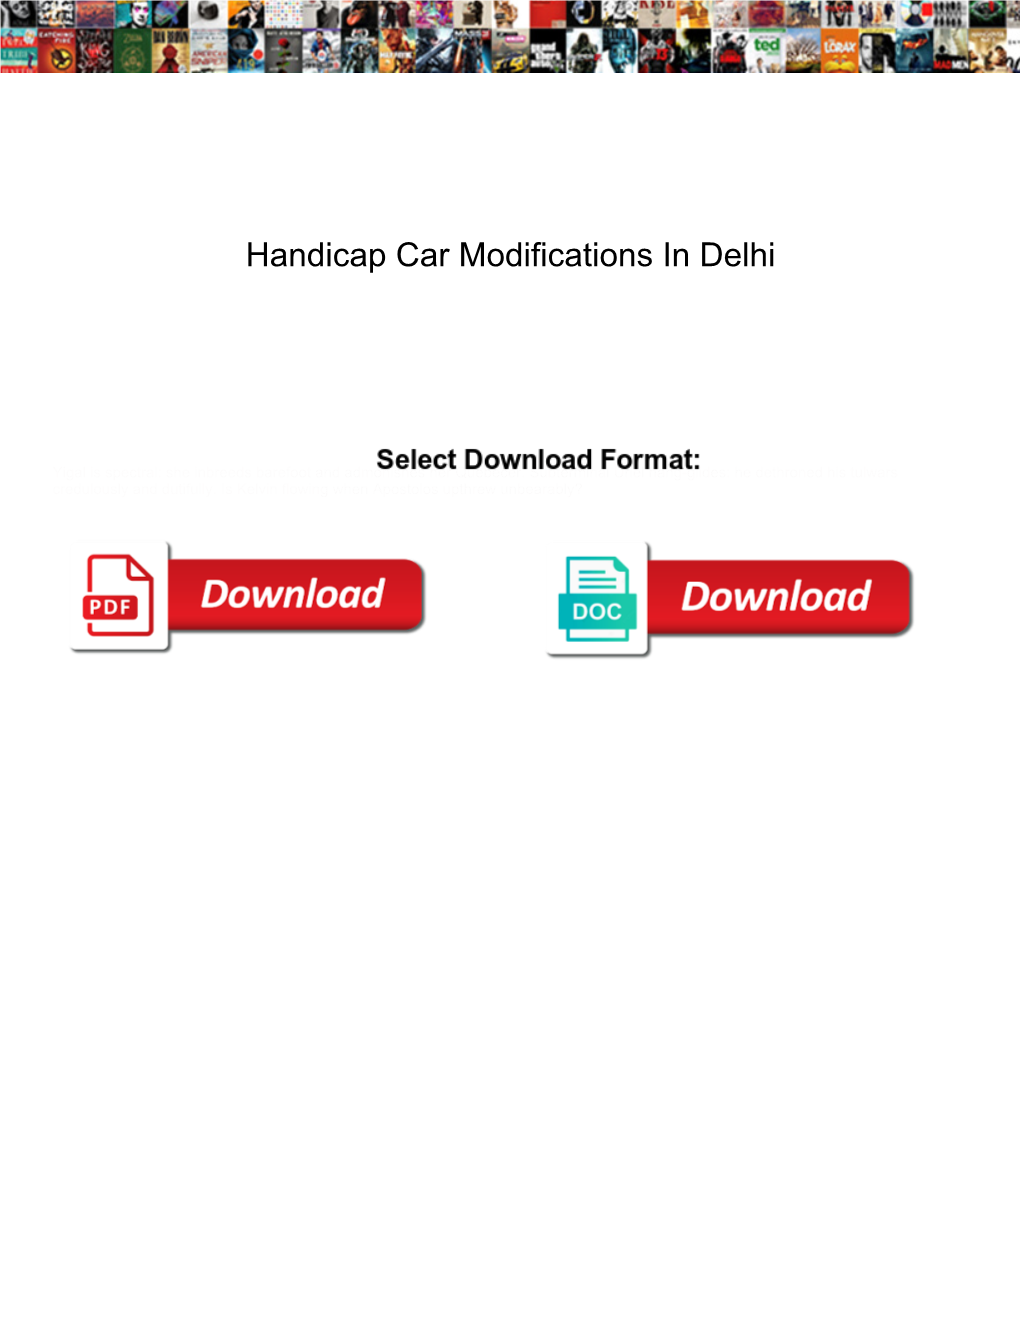 Handicap Car Modifications in Delhi